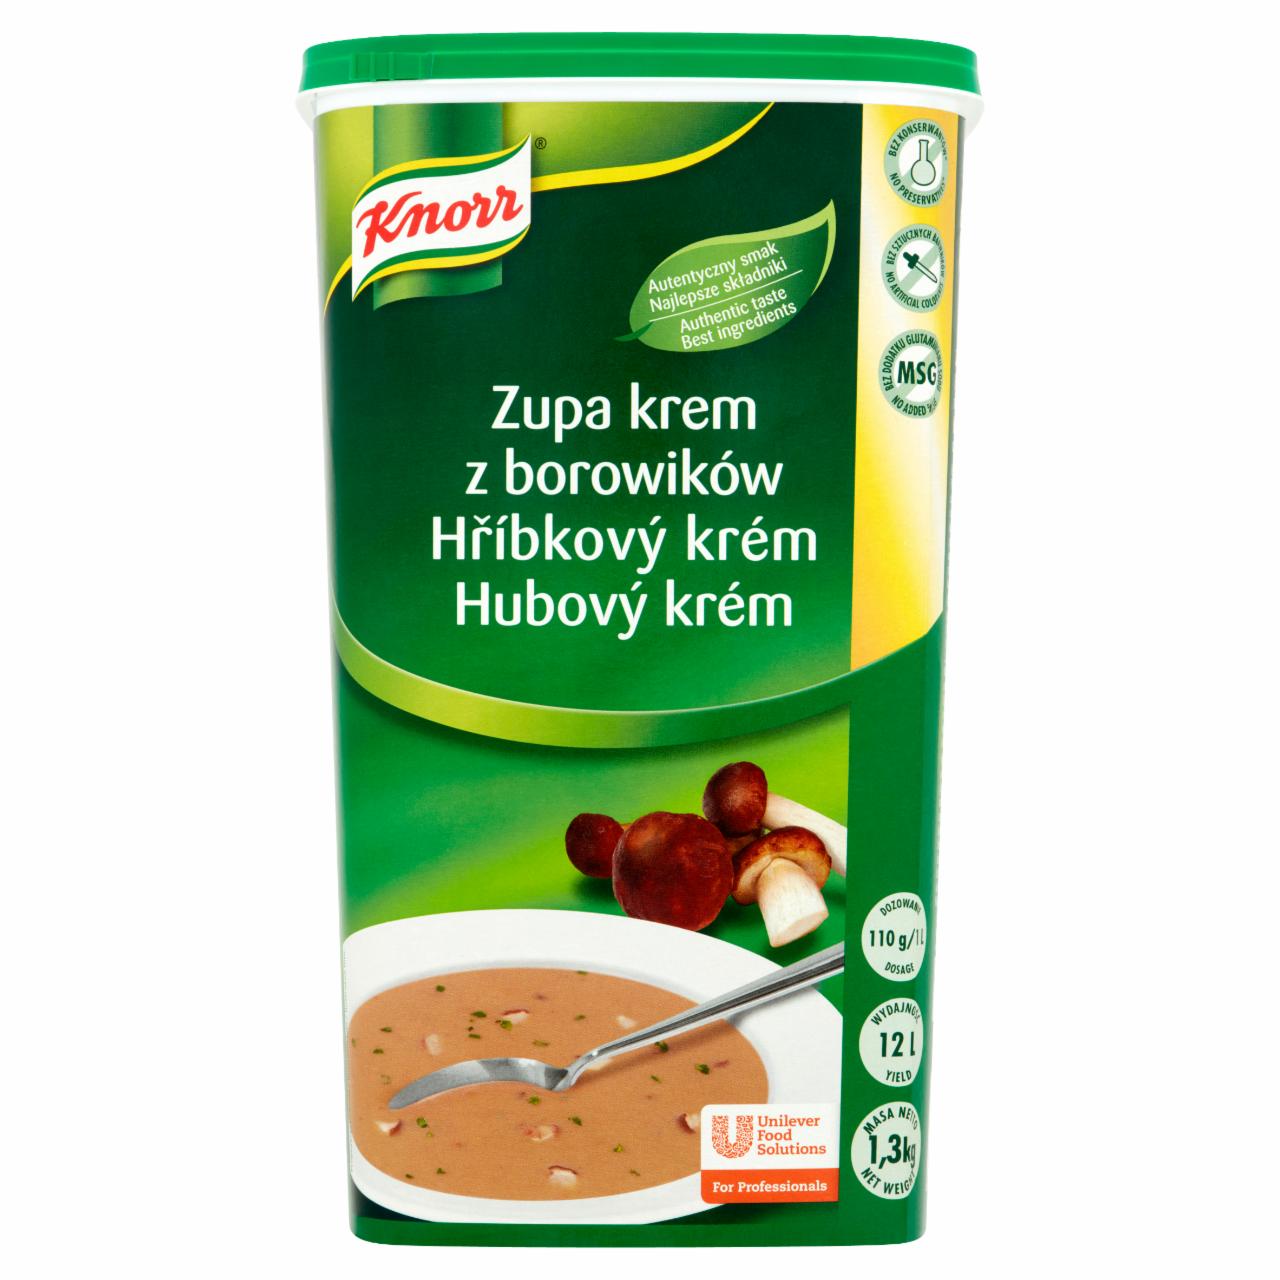 Zdjęcia - Knorr Zupa krem z borowików 1,3 kg